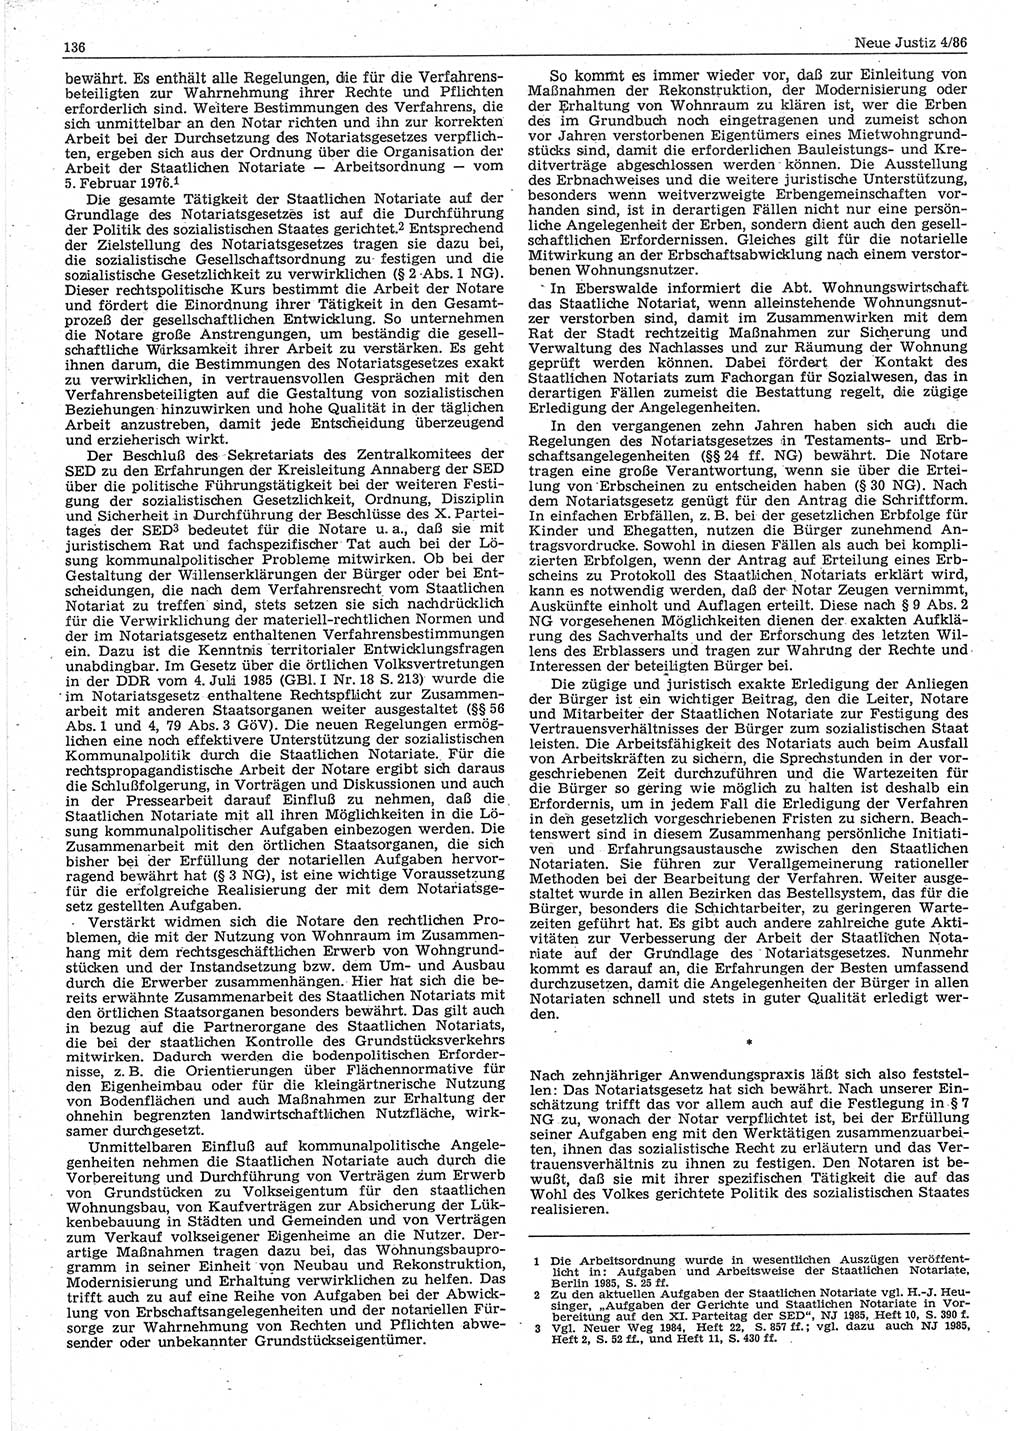 Neue Justiz (NJ), Zeitschrift für sozialistisches Recht und Gesetzlichkeit [Deutsche Demokratische Republik (DDR)], 40. Jahrgang 1986, Seite 136 (NJ DDR 1986, S. 136)